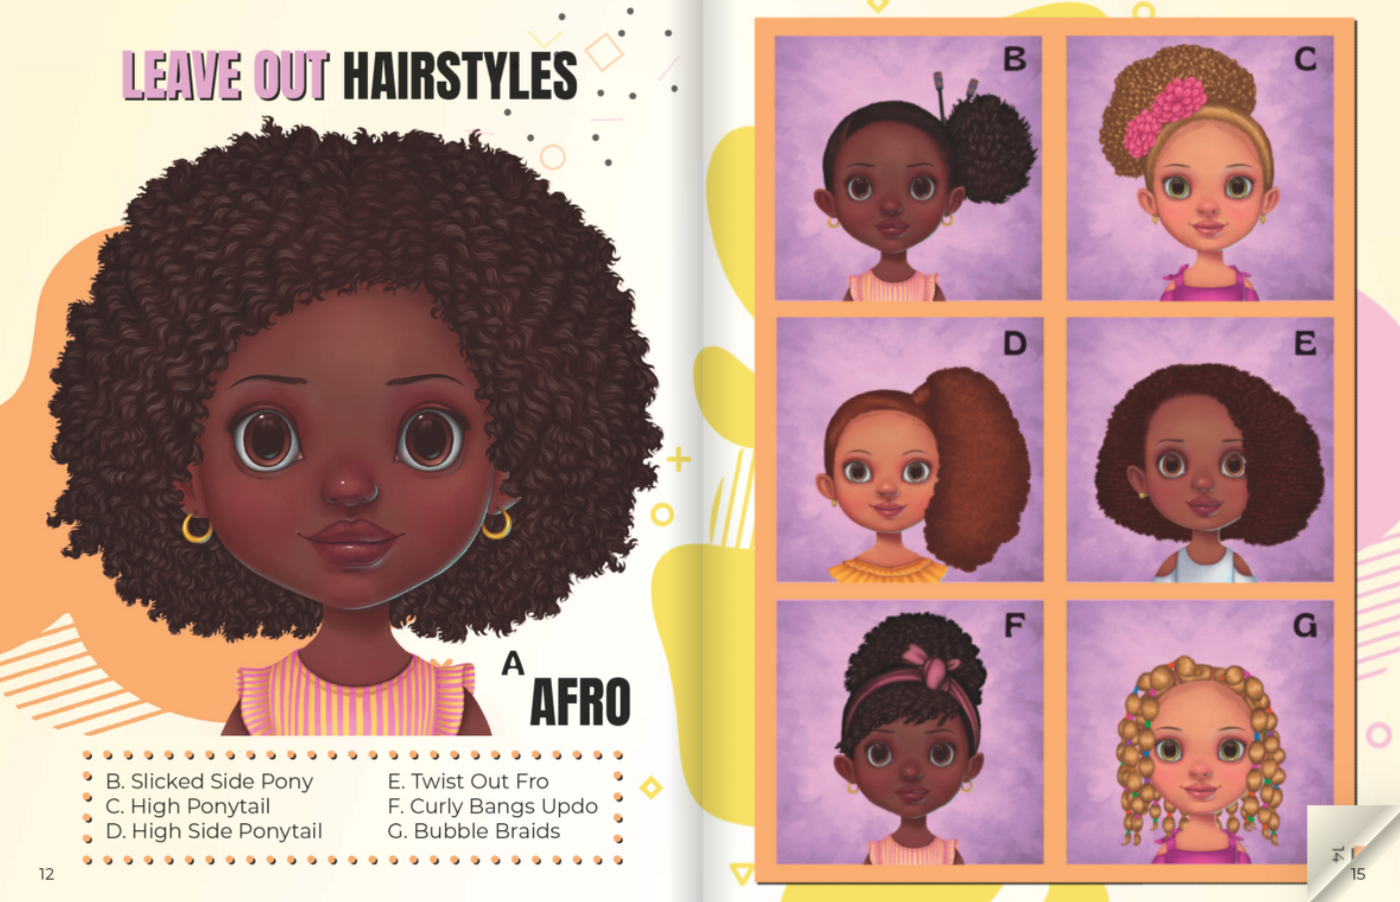 Hello Hair Children's Book, Black Books, Crown Day, Children's Hairstyles